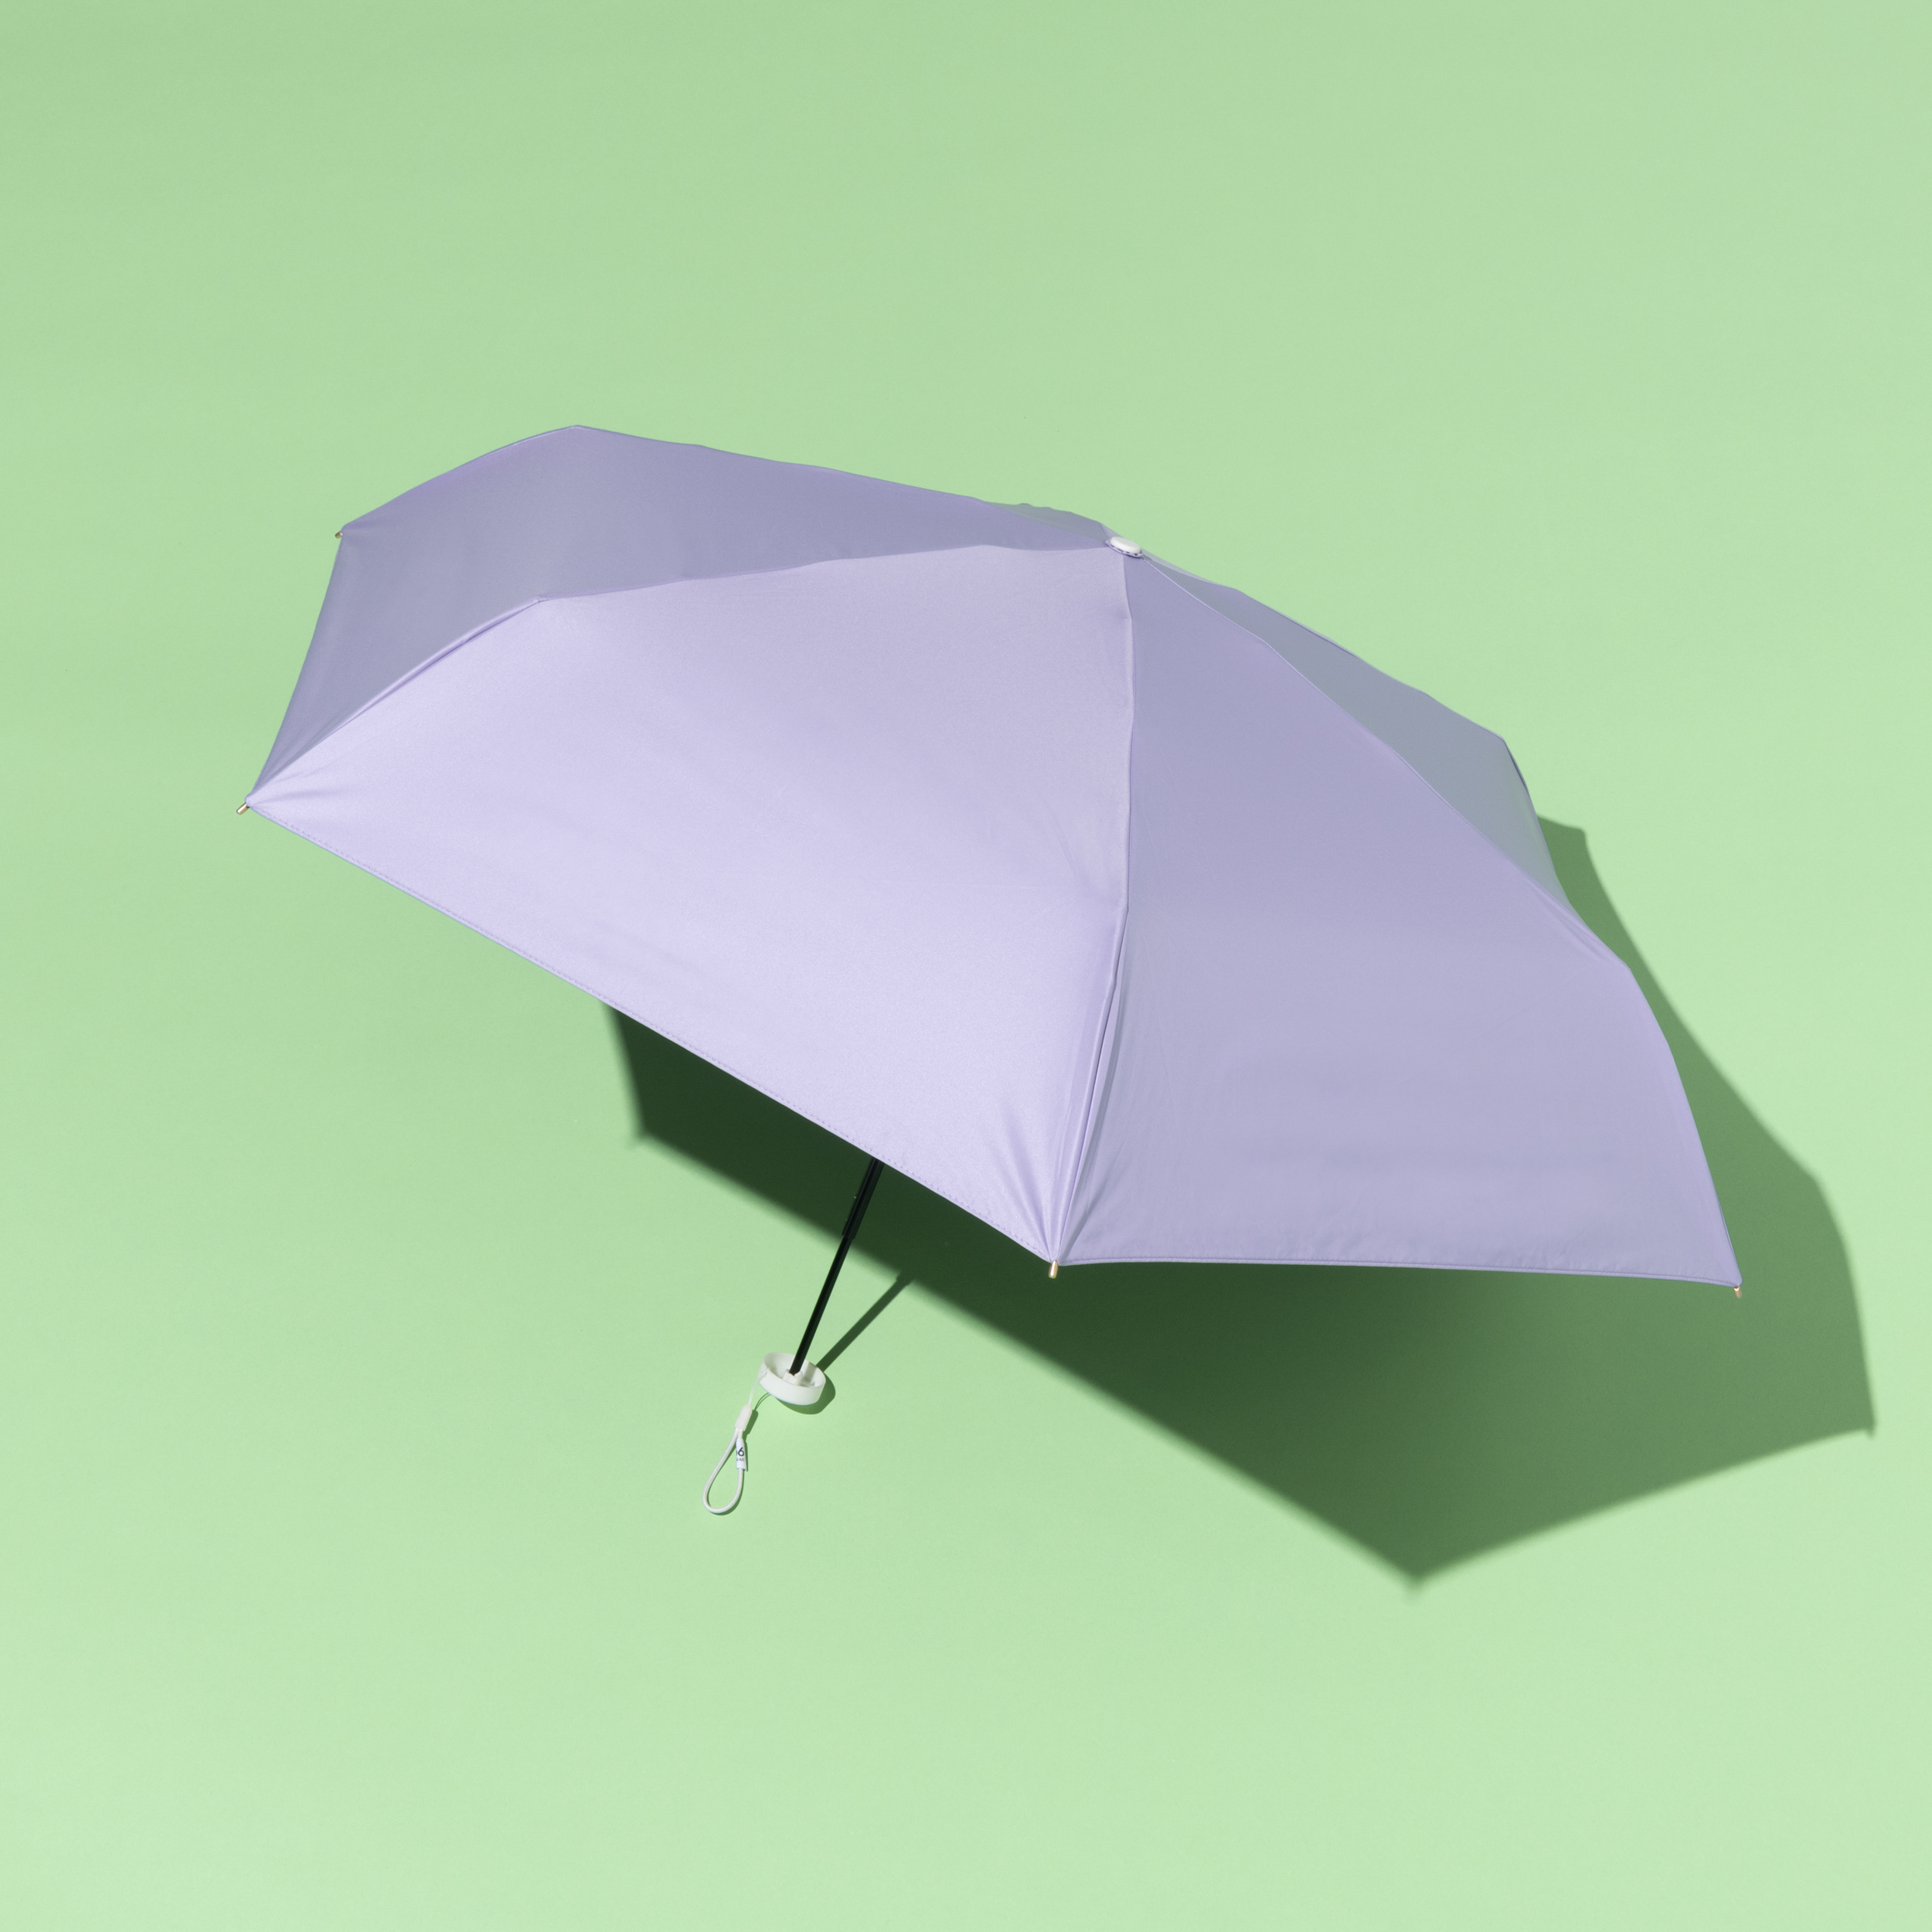 ウォーターフロントの日傘の製品画像